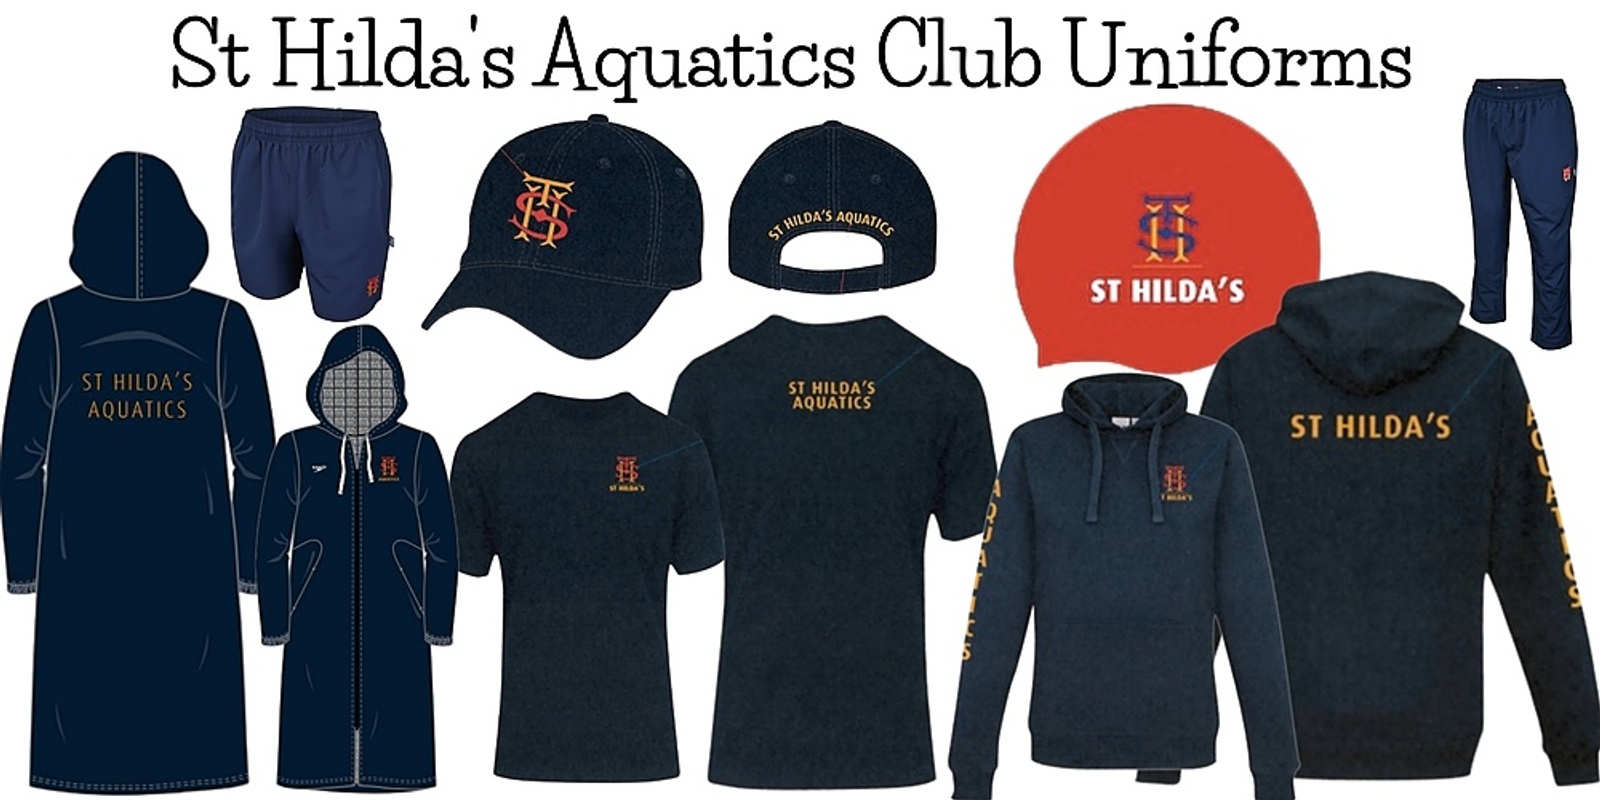 St Hilda's Aquatics Club Merchandise